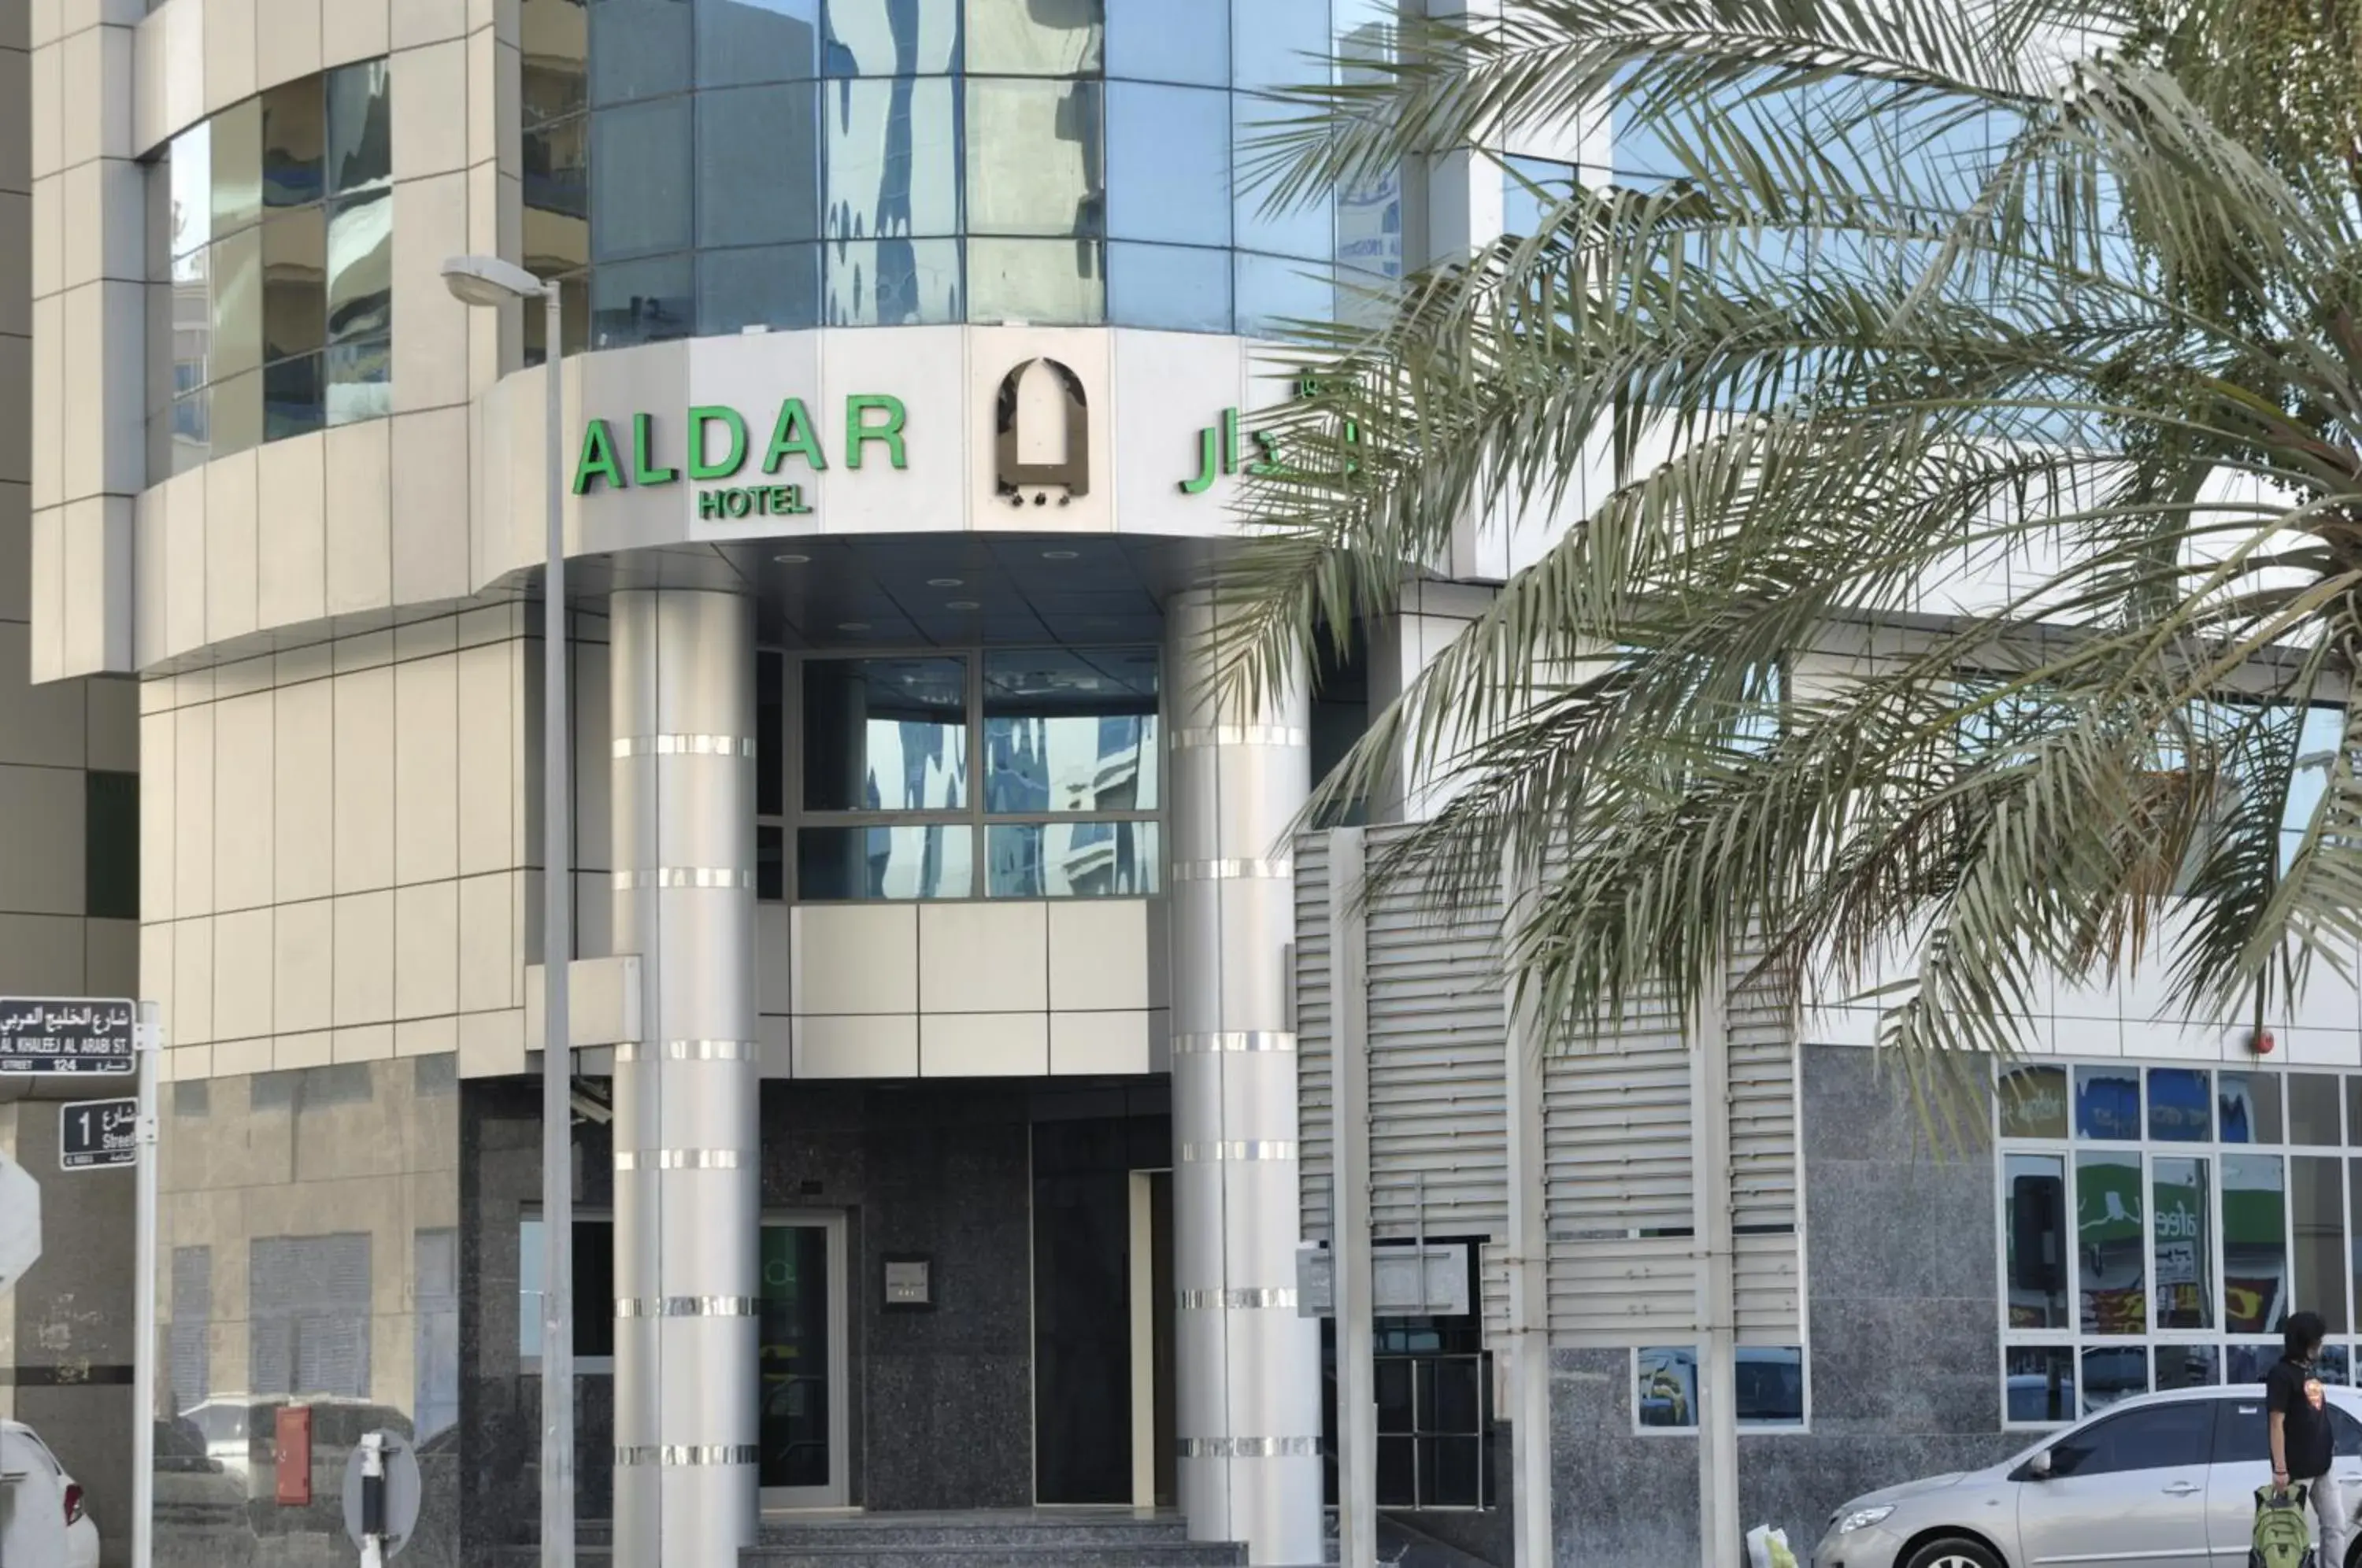 Facade/entrance, Property Building in Aldar Hotel